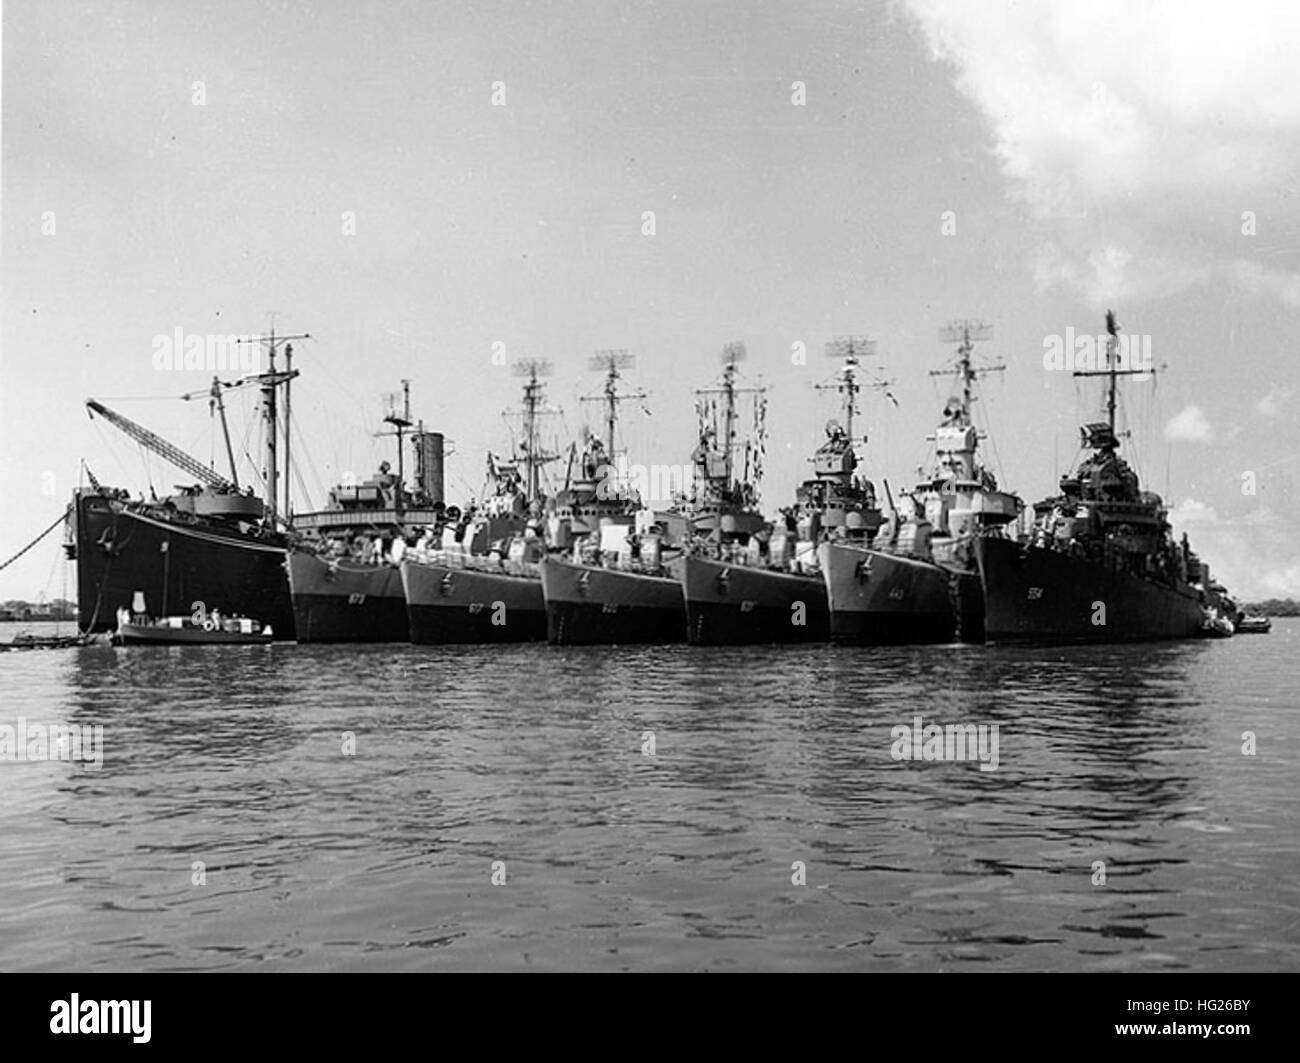 (AD-9) con sei cacciatorpediniere a fianco, probabilmente a Pearl Harbor, Hawaii, nel luglio 1945. Il cacciatorpediniere sono (da sinistra a destra): USS Hawkins (DD-873); USS Ordronaux (DD-617); USS Boyle (DD-600); USS Champlin (DD-601); USS Swanson (DD-443); e USS Franchi (DD-554). Ufficiale DEGLI STATI UNITI Fotografia della marina militare, ora nelle collezioni di archivi nazionali. USS Black Hawk (AD-9) con cacciatorpediniere nel luglio 1945 Foto Stock